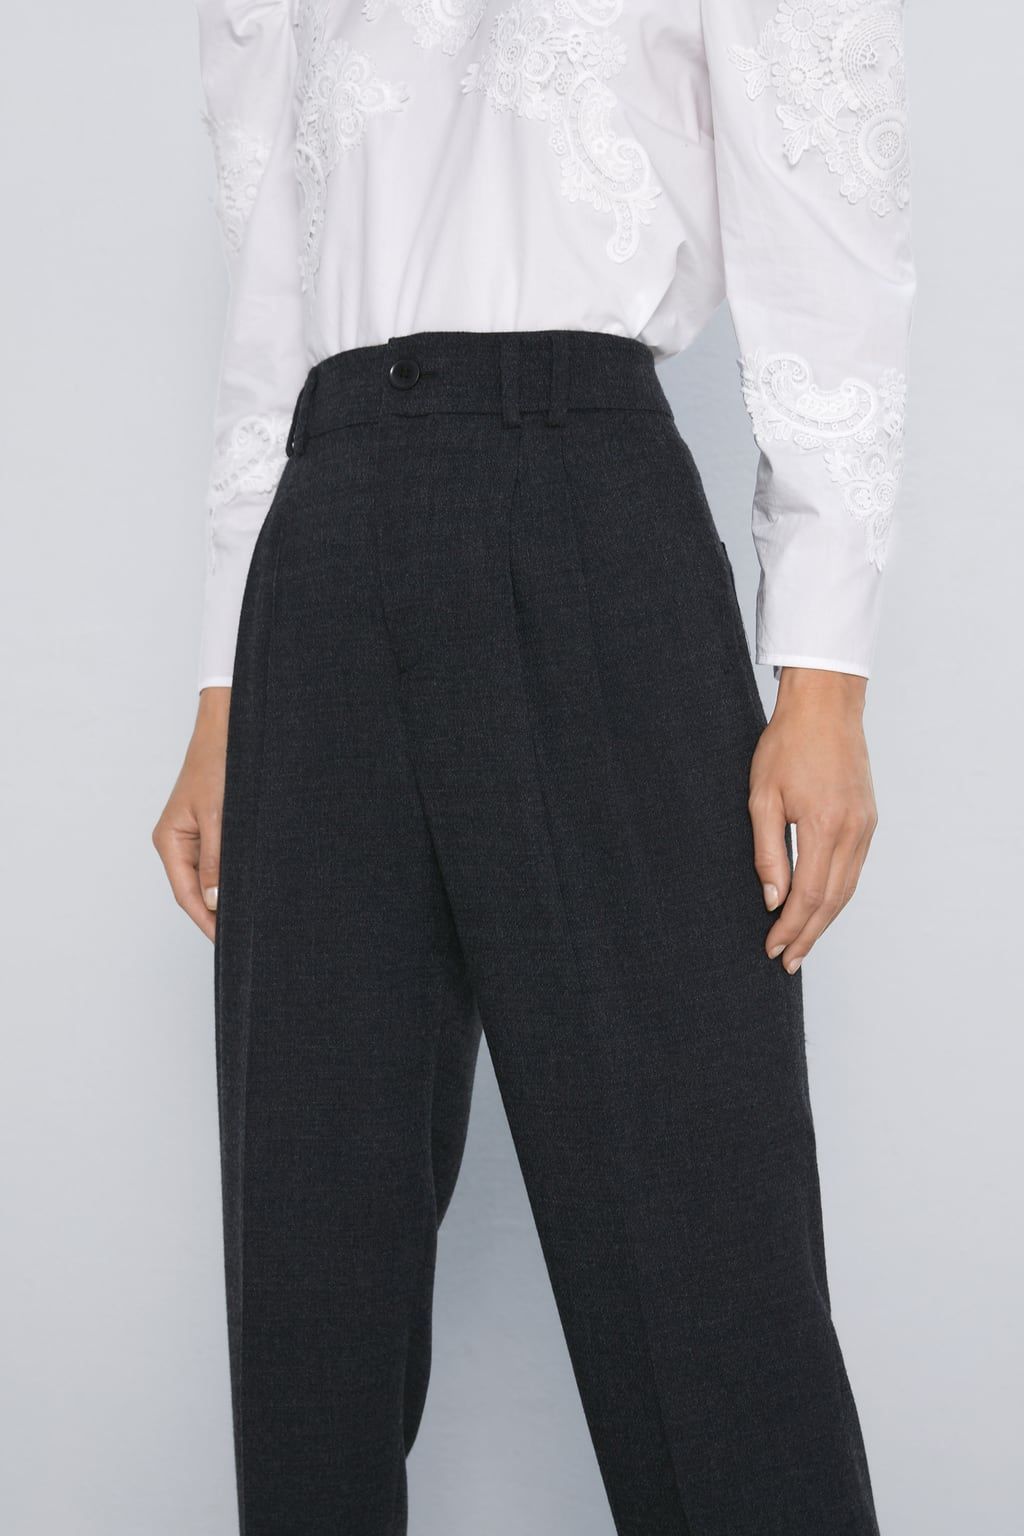 Las mejores ofertas en Pantalones de mujer Zara